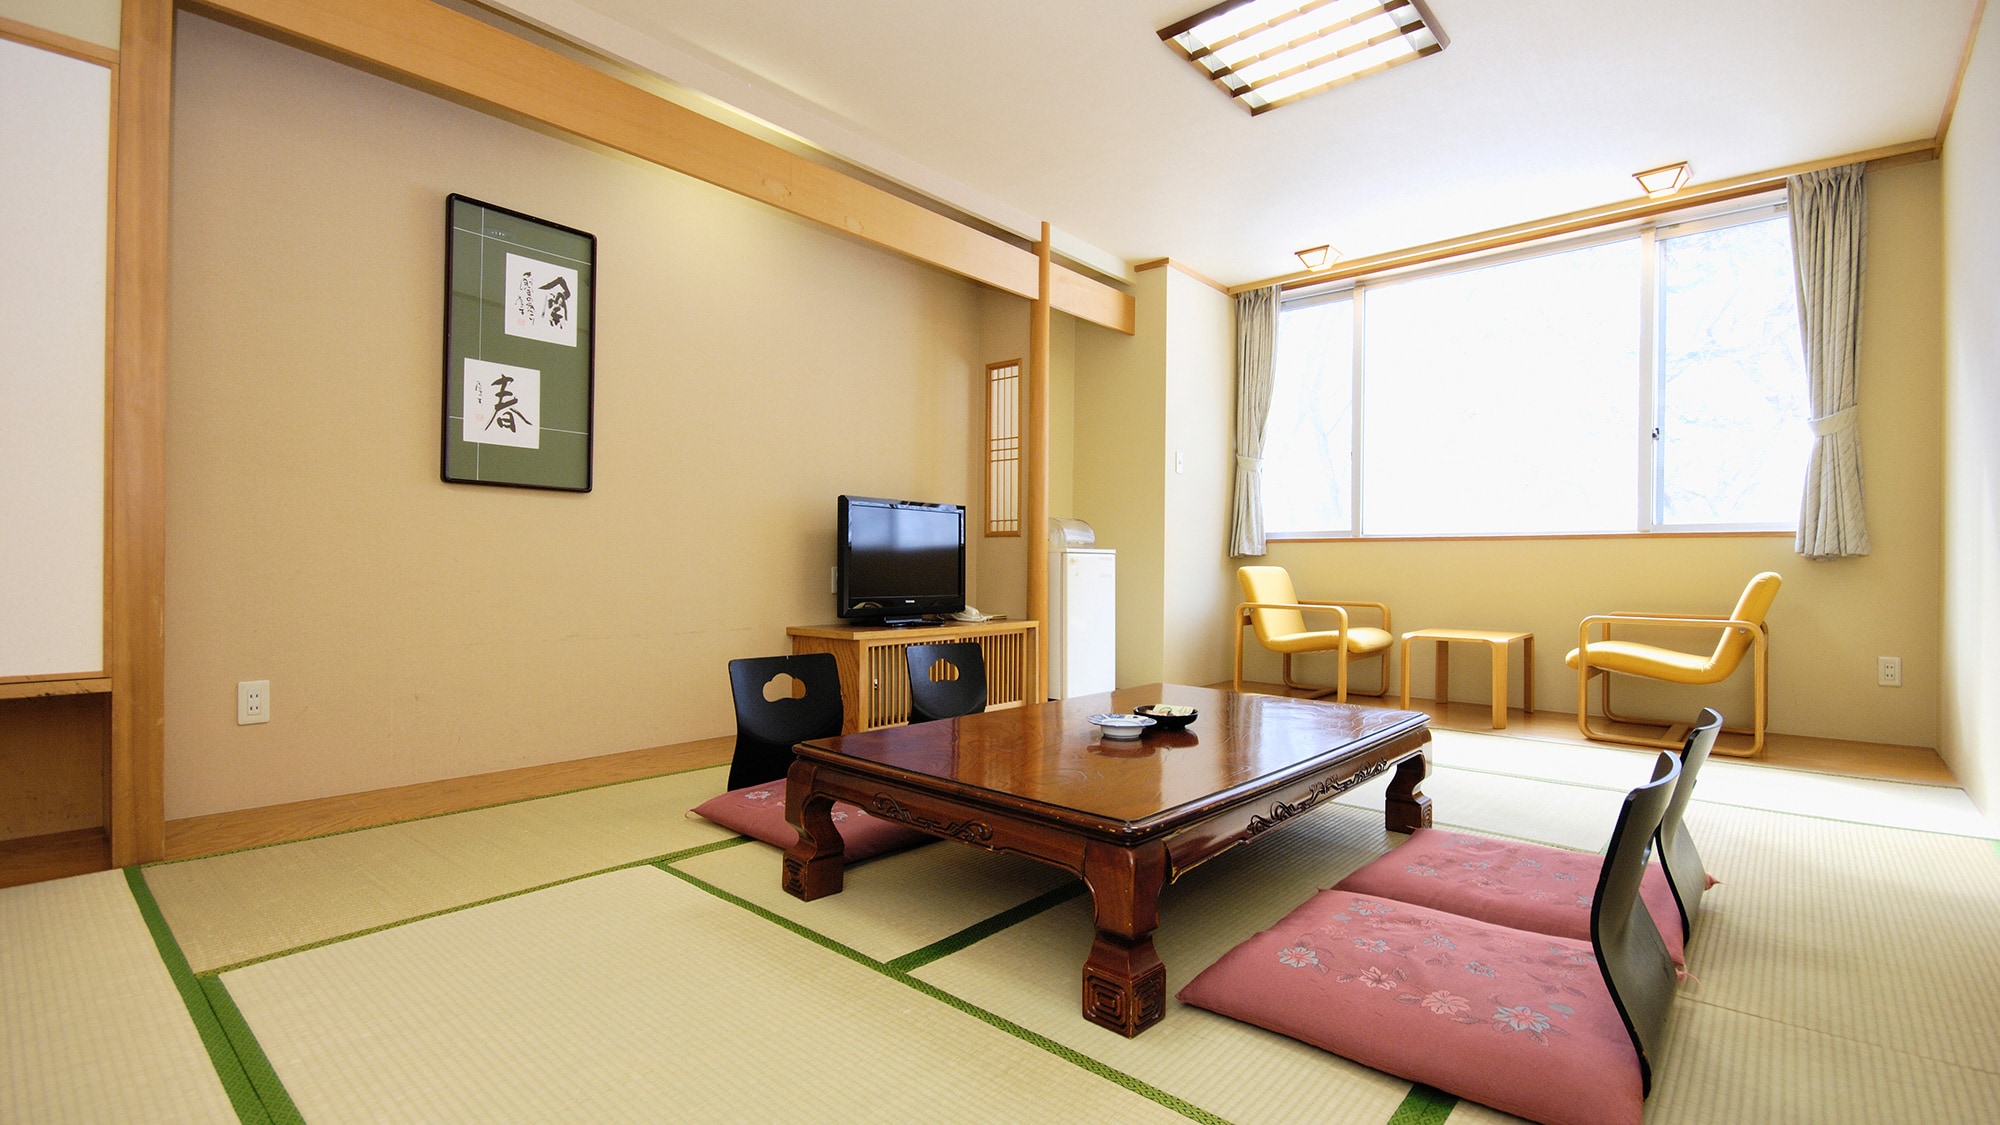 【일식 방】 표준적인 일본식 방입니다. 다리를 펴고 편히 쉬십시오.